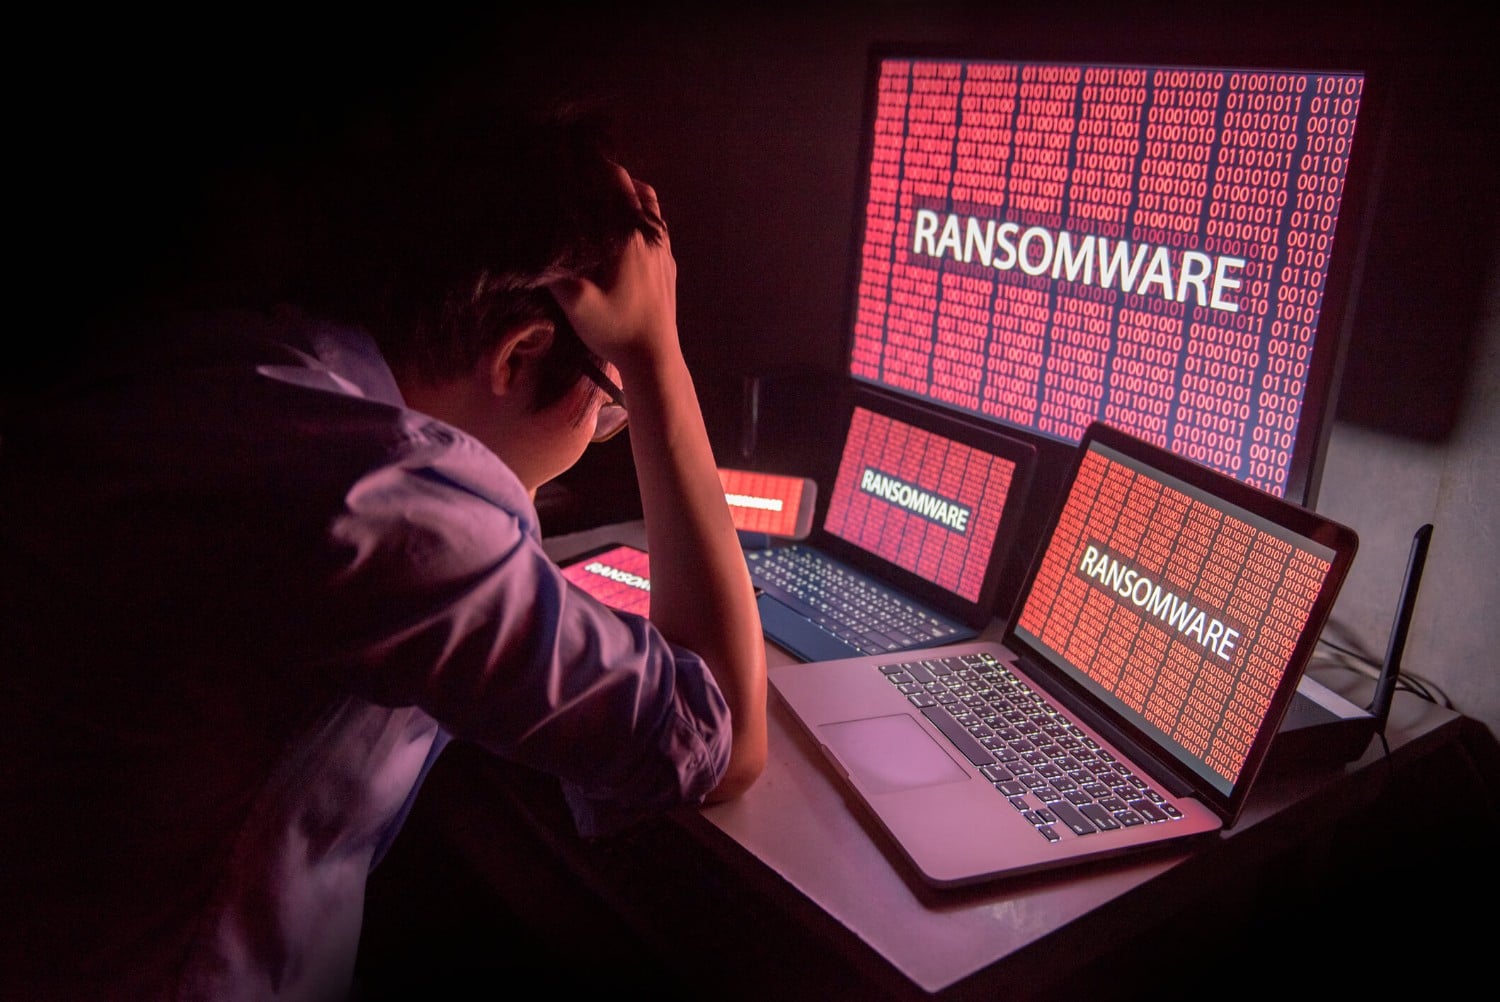 Ransomware gera transformações profundas nas formas de crime cibernético